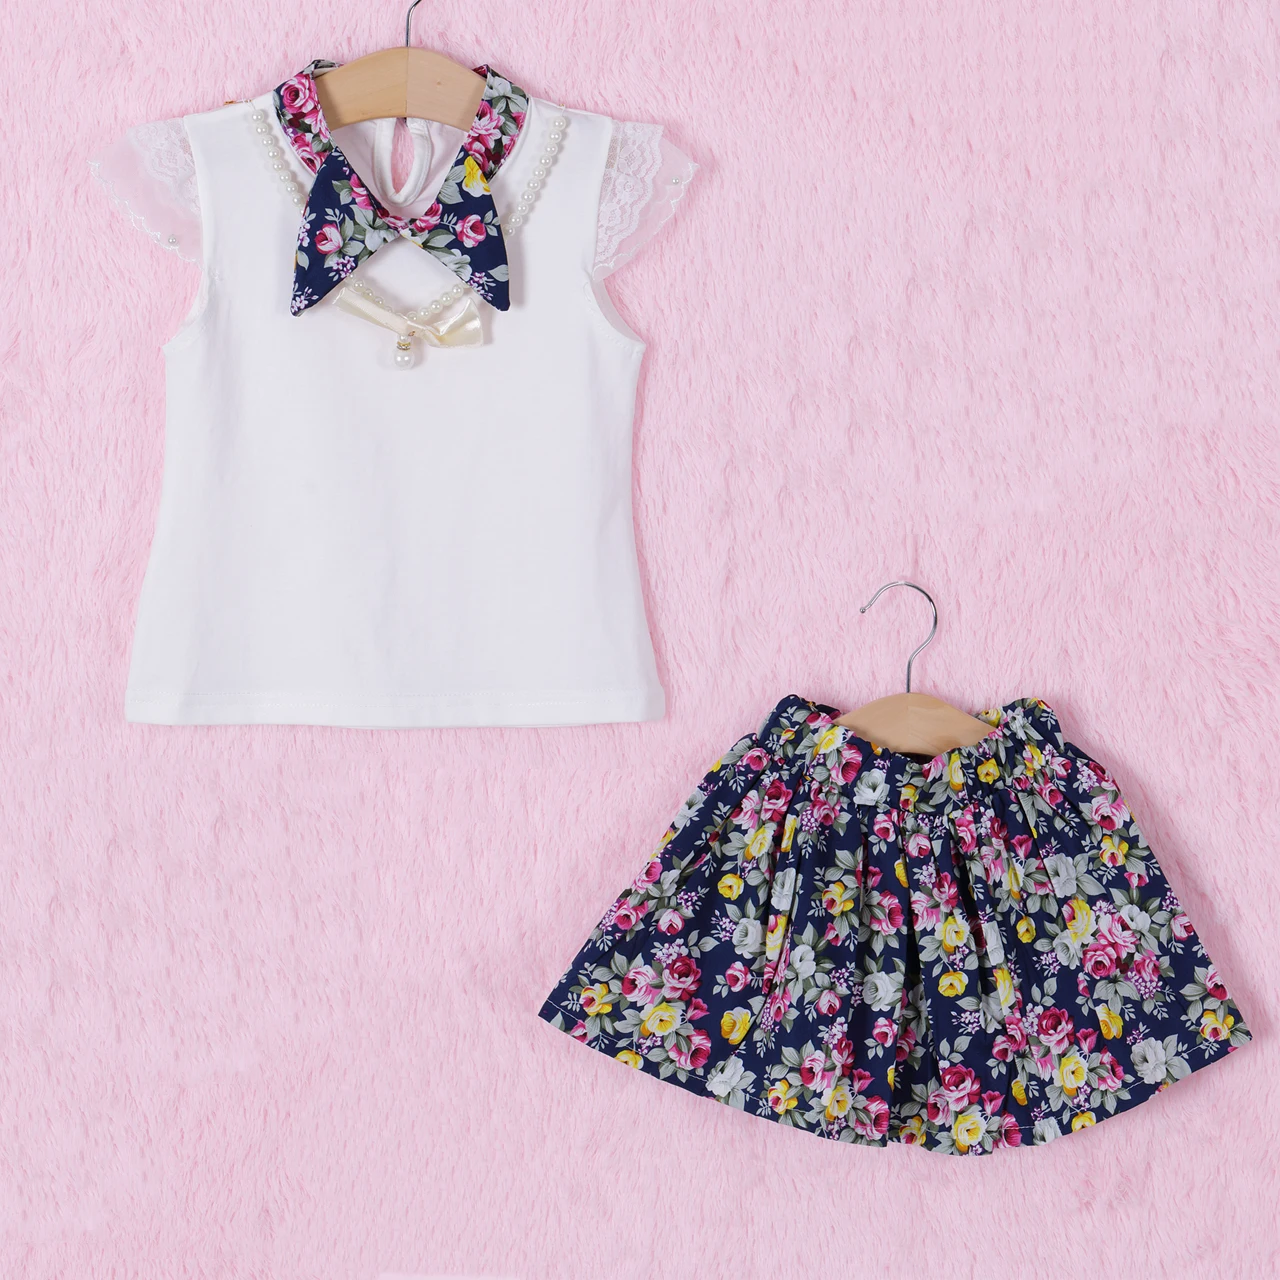 Pudcoco/комплект для девочек, От 3 до 7 лет в США, 3 предмета, футболка для девочек+ юбка с цветочным рисунком+ ожерелье для наряда, платье принцессы